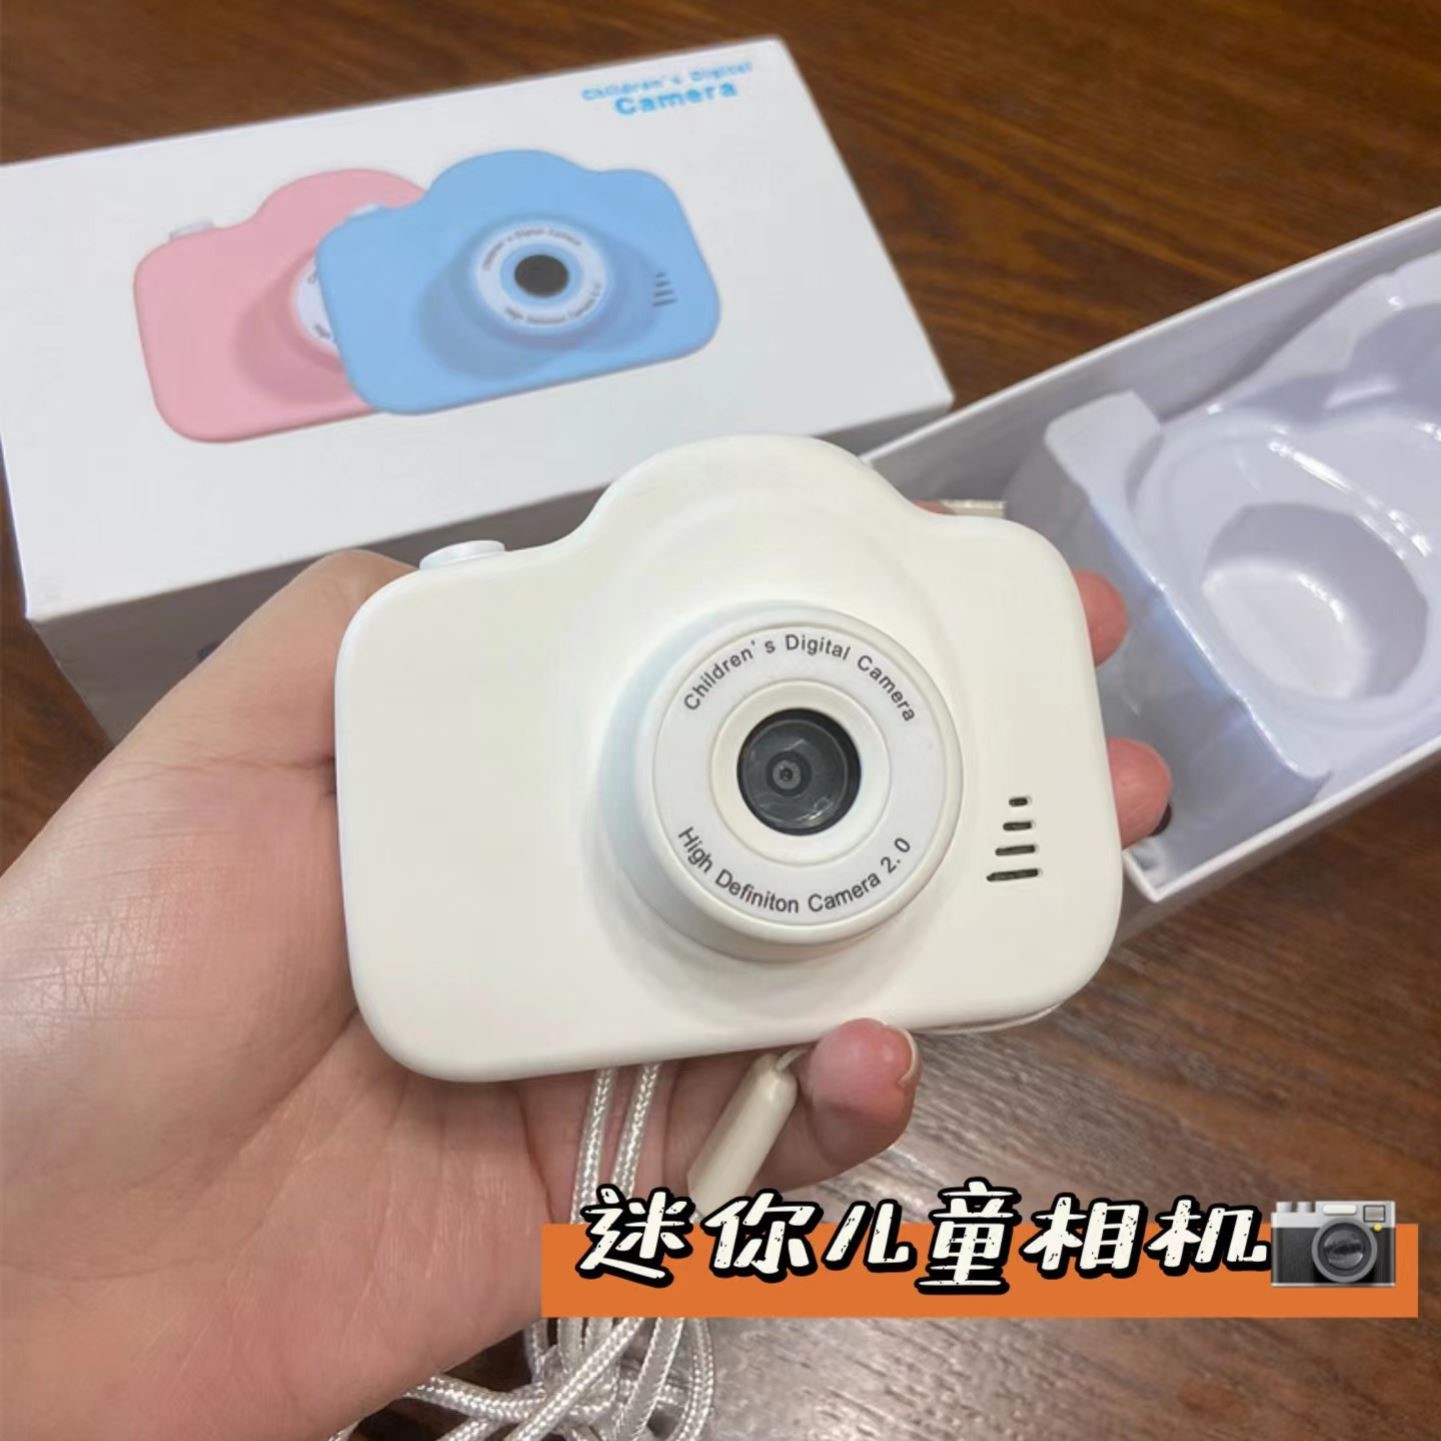 数码照相机高清可拍照可打印随身迷你相机儿童男女孩玩具学生礼物